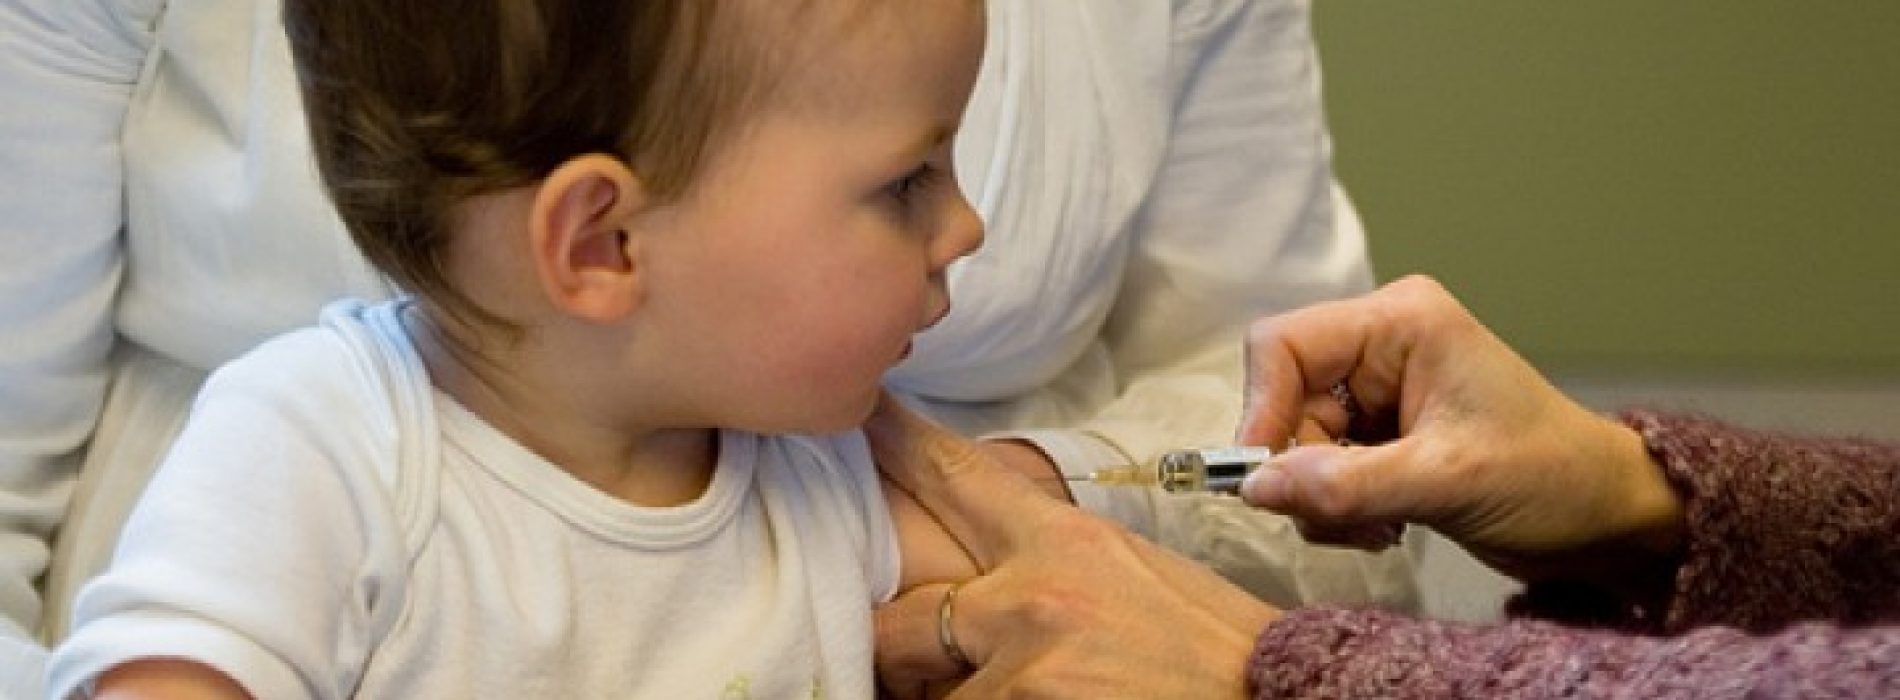 De reden waarom het Amerikaanse Congres geen hoorzitting wil houden over de relatie tussen autisme en vaccins